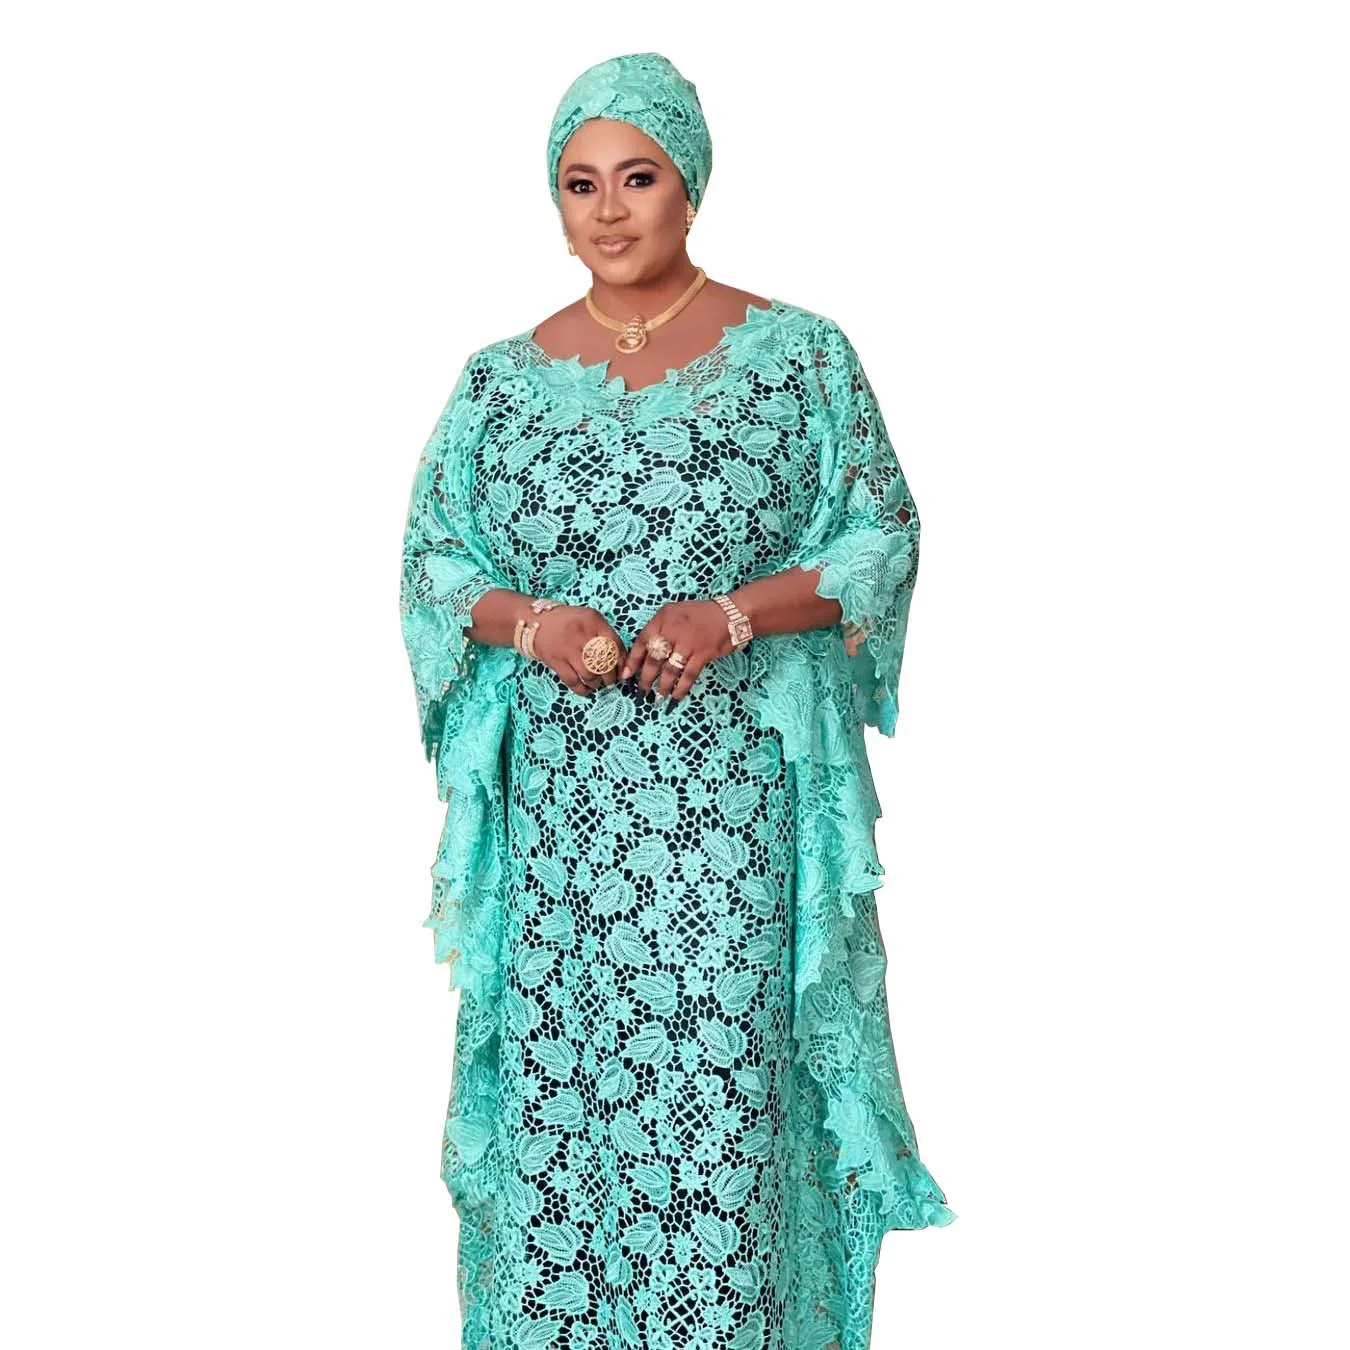 

Африканское кружевное платье Дашики, африканские платья для женщин, супер размер, традиционный халат Boubou, африканская одежда